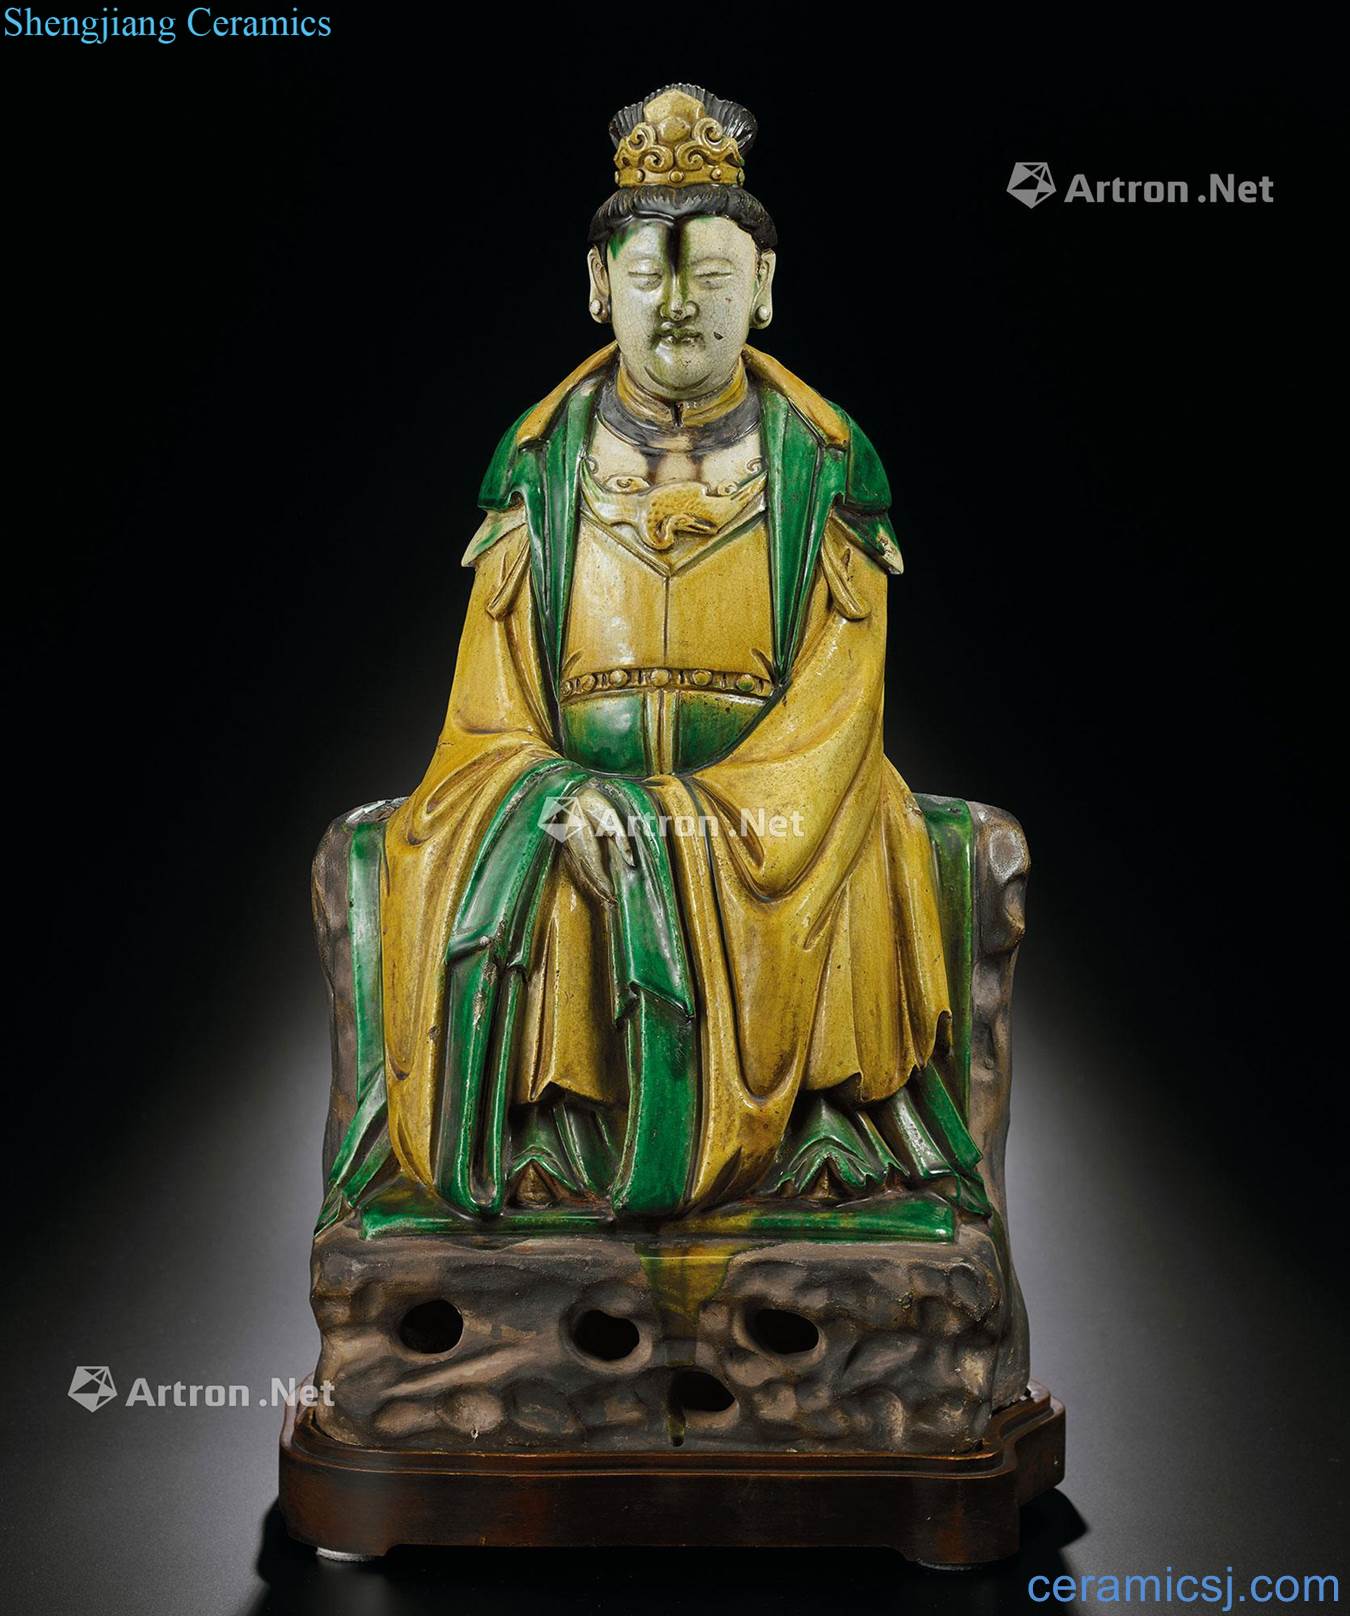 Ming plain tricolour queen's statue